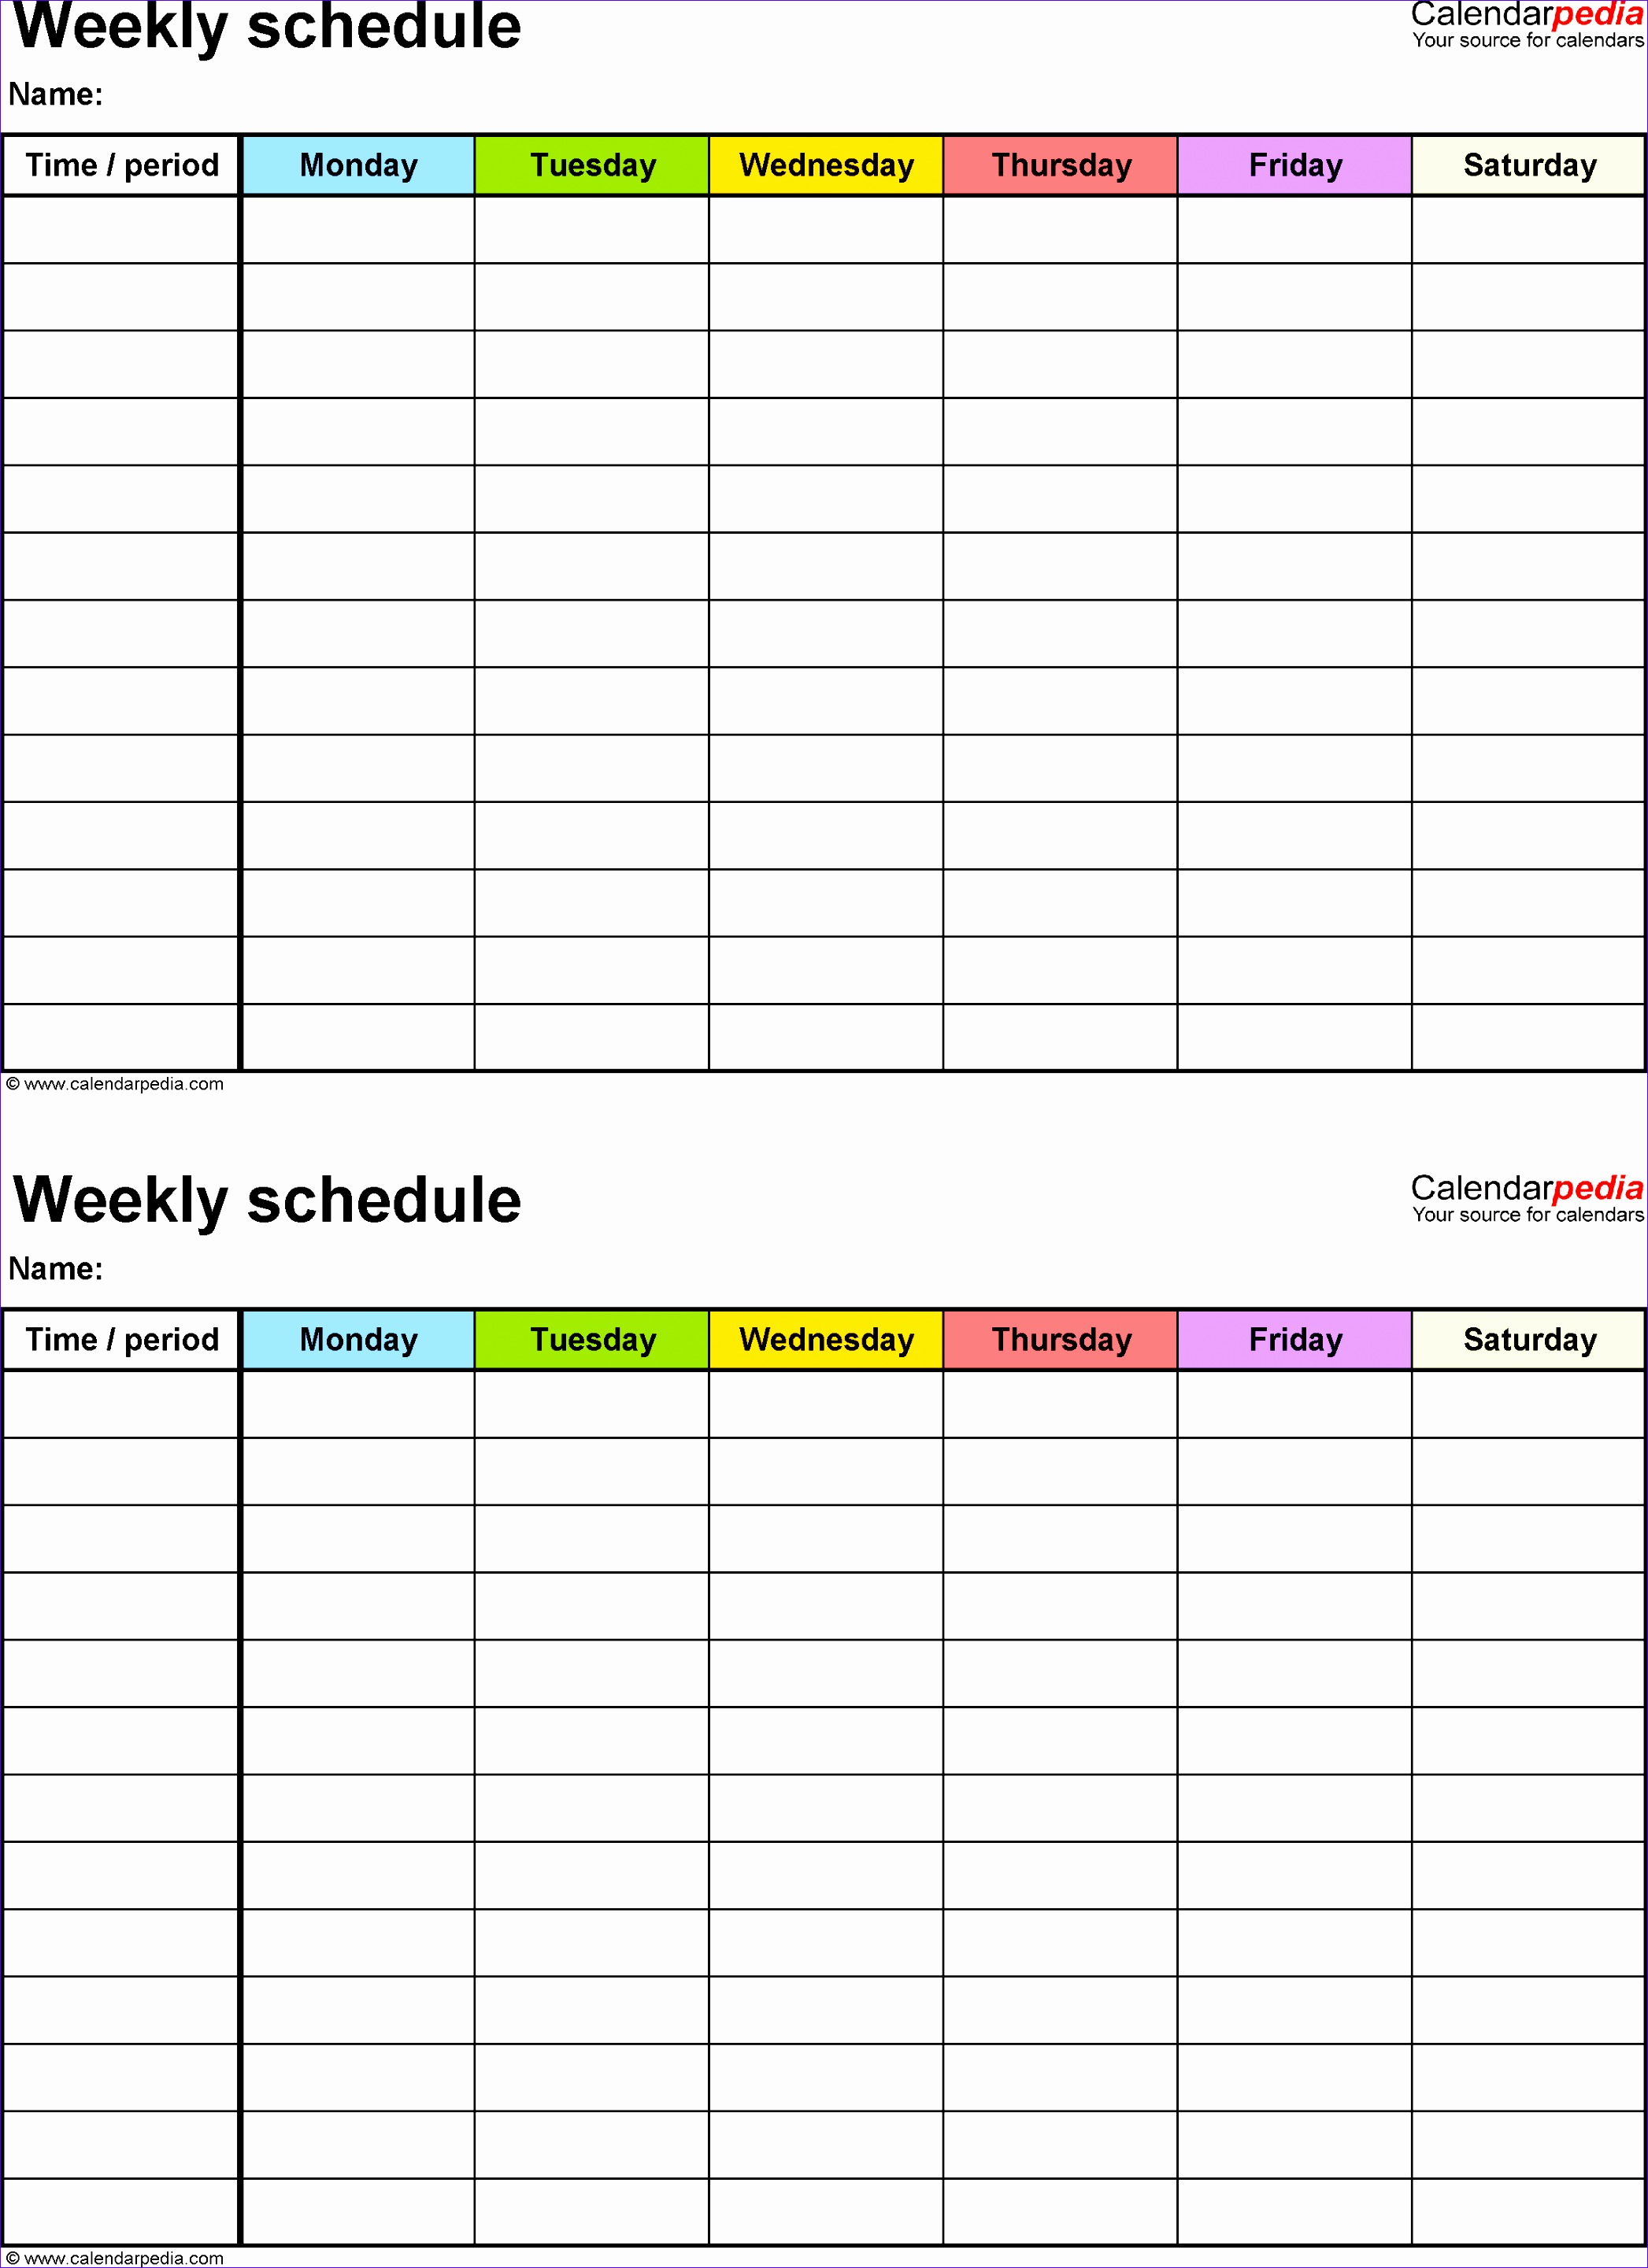 weekly schedule 6 days